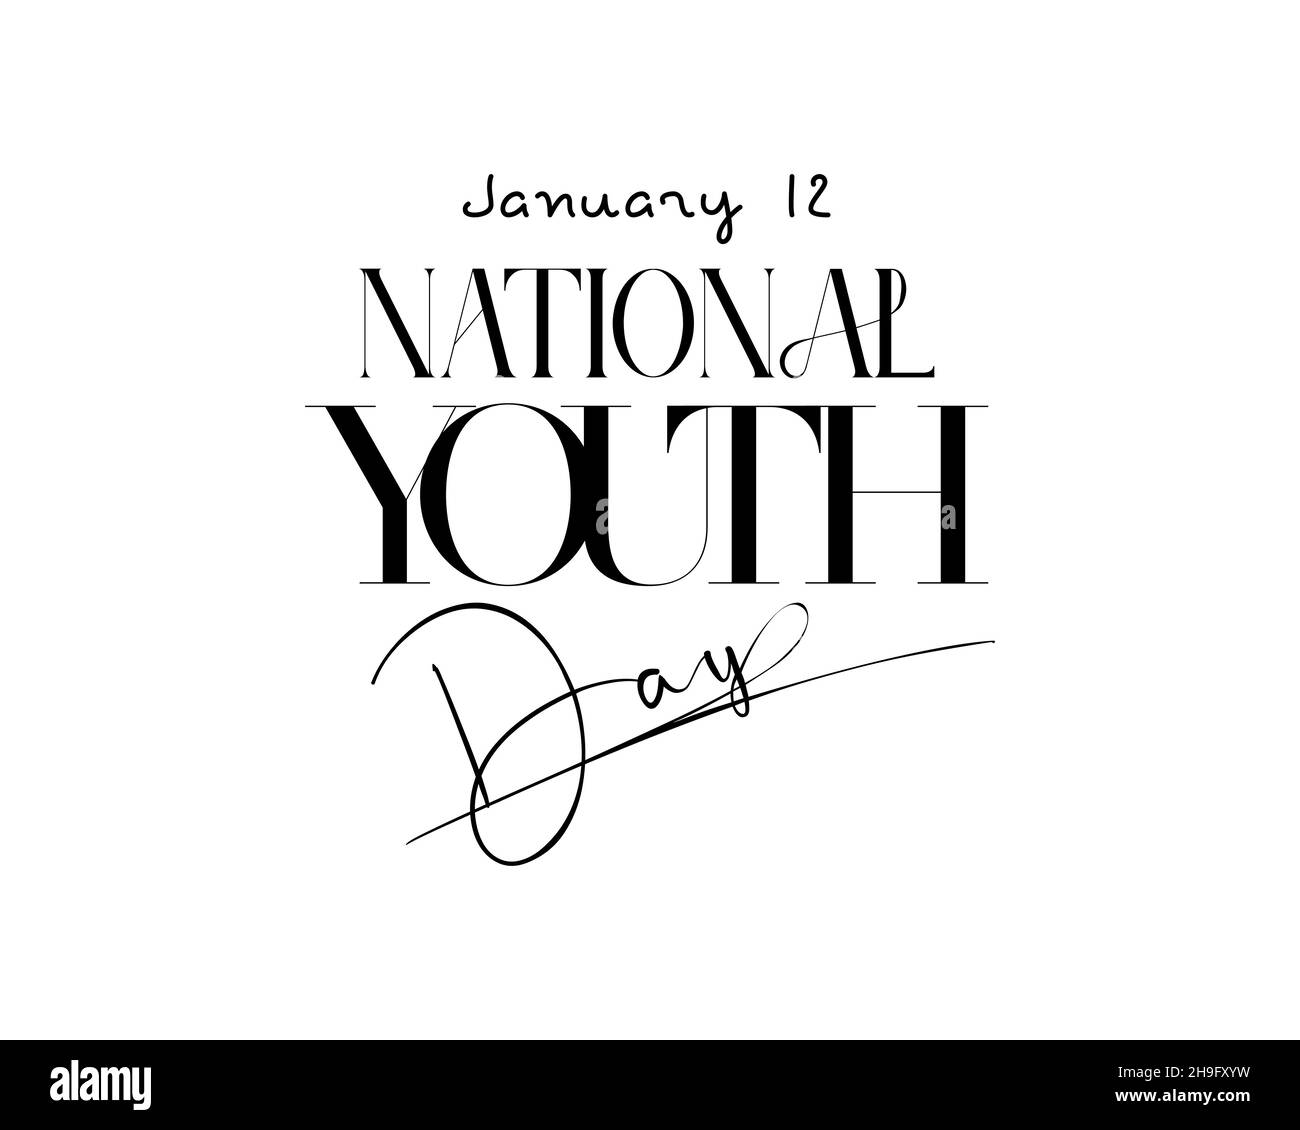 12 janvier - Journée nationale de la jeunesse. Dessin vectoriel de lettrage à la main pour la Journée nationale de la jeunesse.Illustration de calligraphie pour bannière, affiche, chemise, carte. Illustration de Vecteur